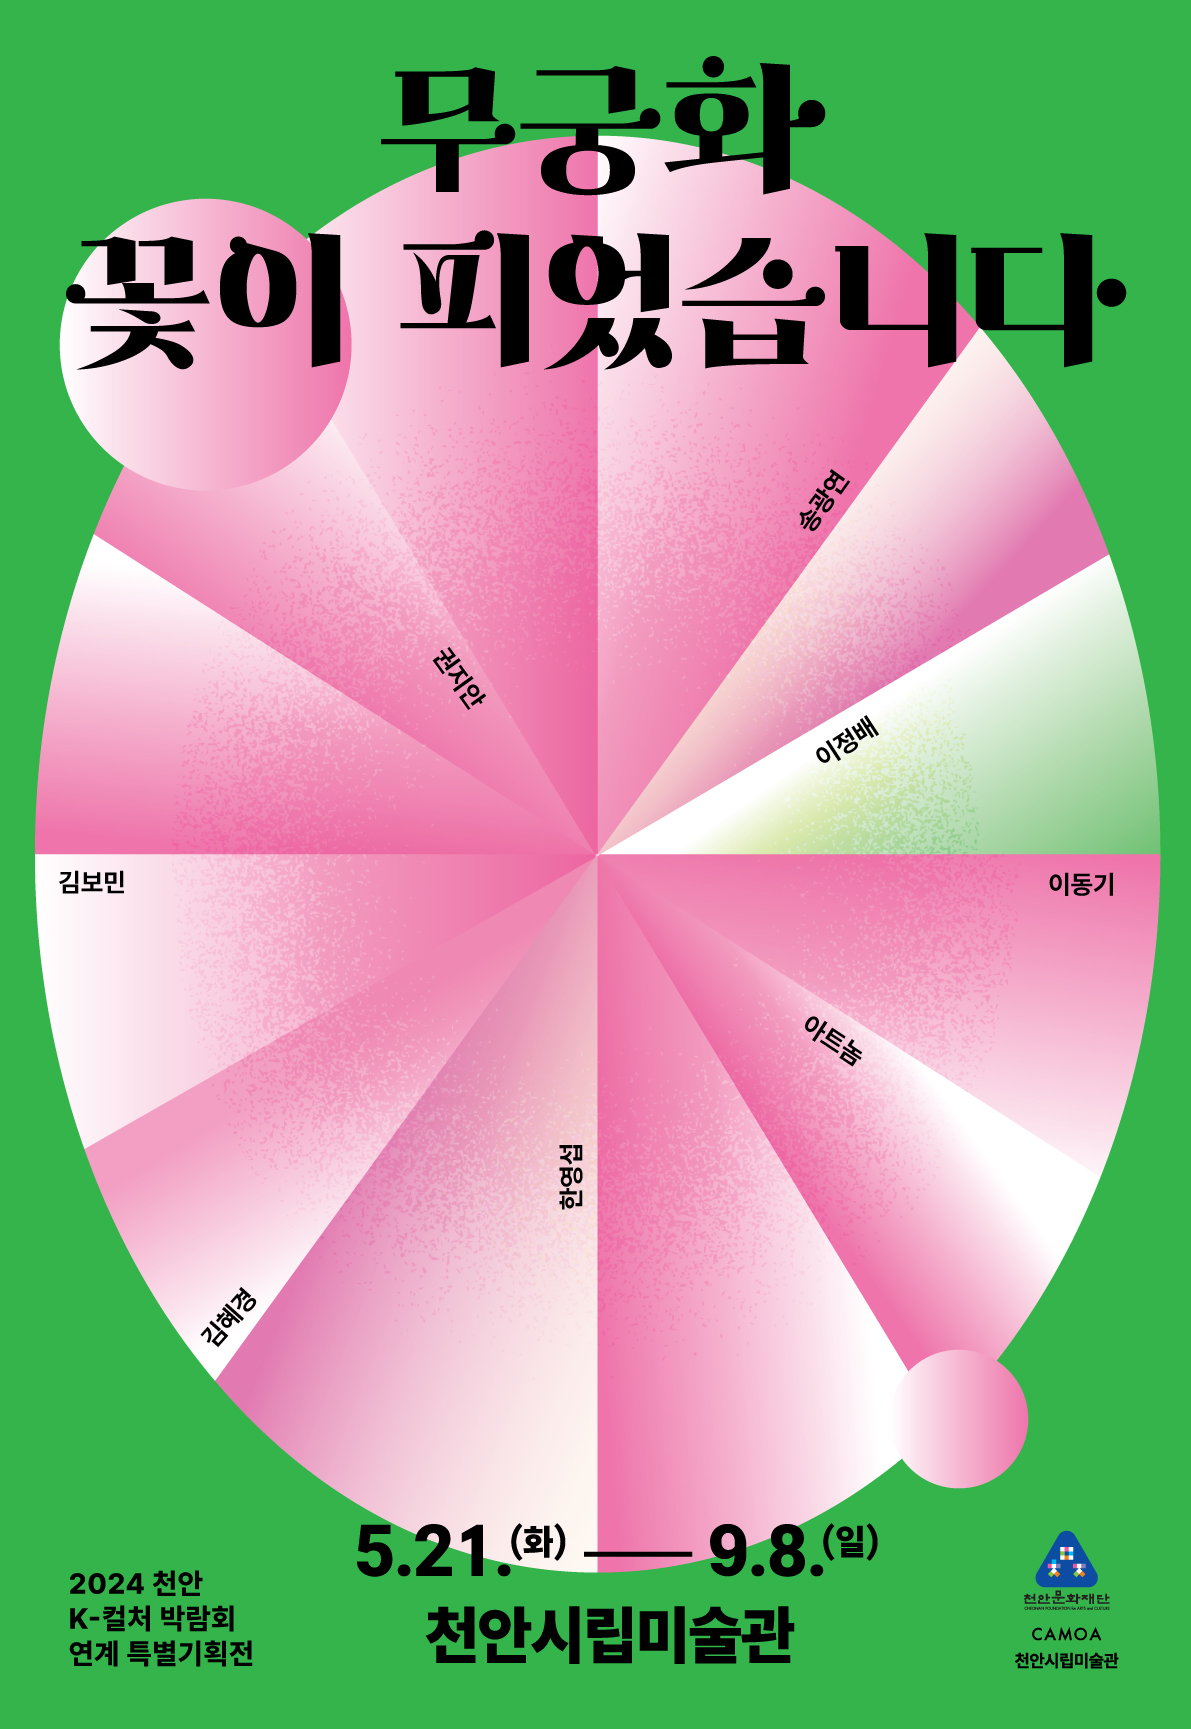 천안시립미술관 천안 K-컬처 박람회 연계한 특별기획전 《무궁화 꽃이 피었습니다》